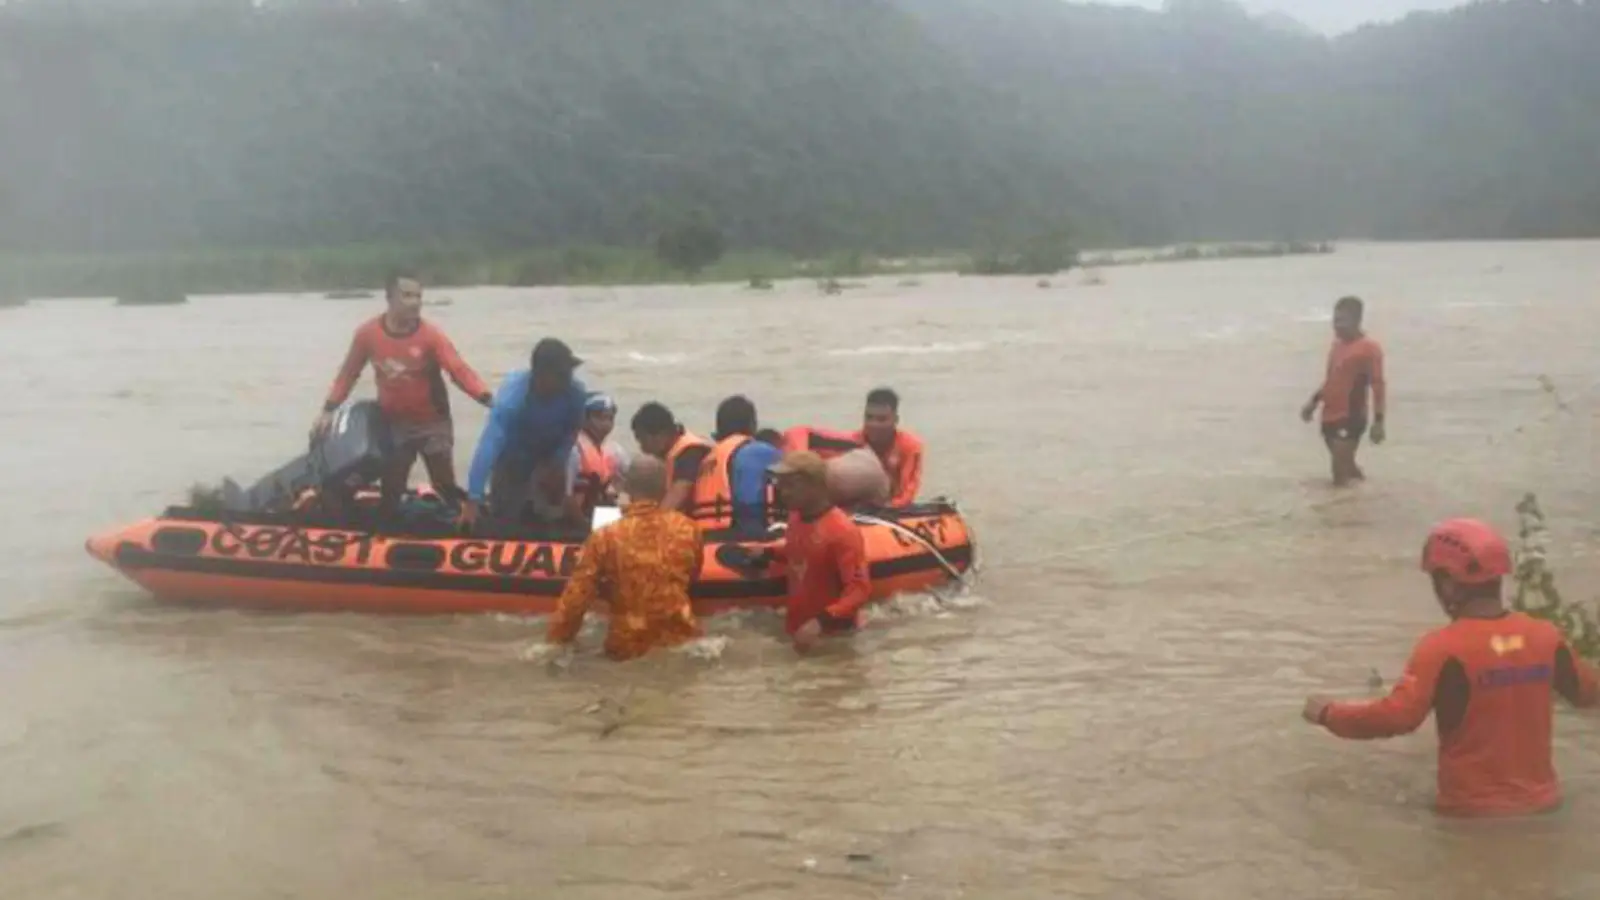 Steinbrucharbeiter werden in Naguilian (Philippinen) mit einem Schlauchboot evakuiert. (Foto: PHILIPPINE COAST GUARD/AP/dpa)